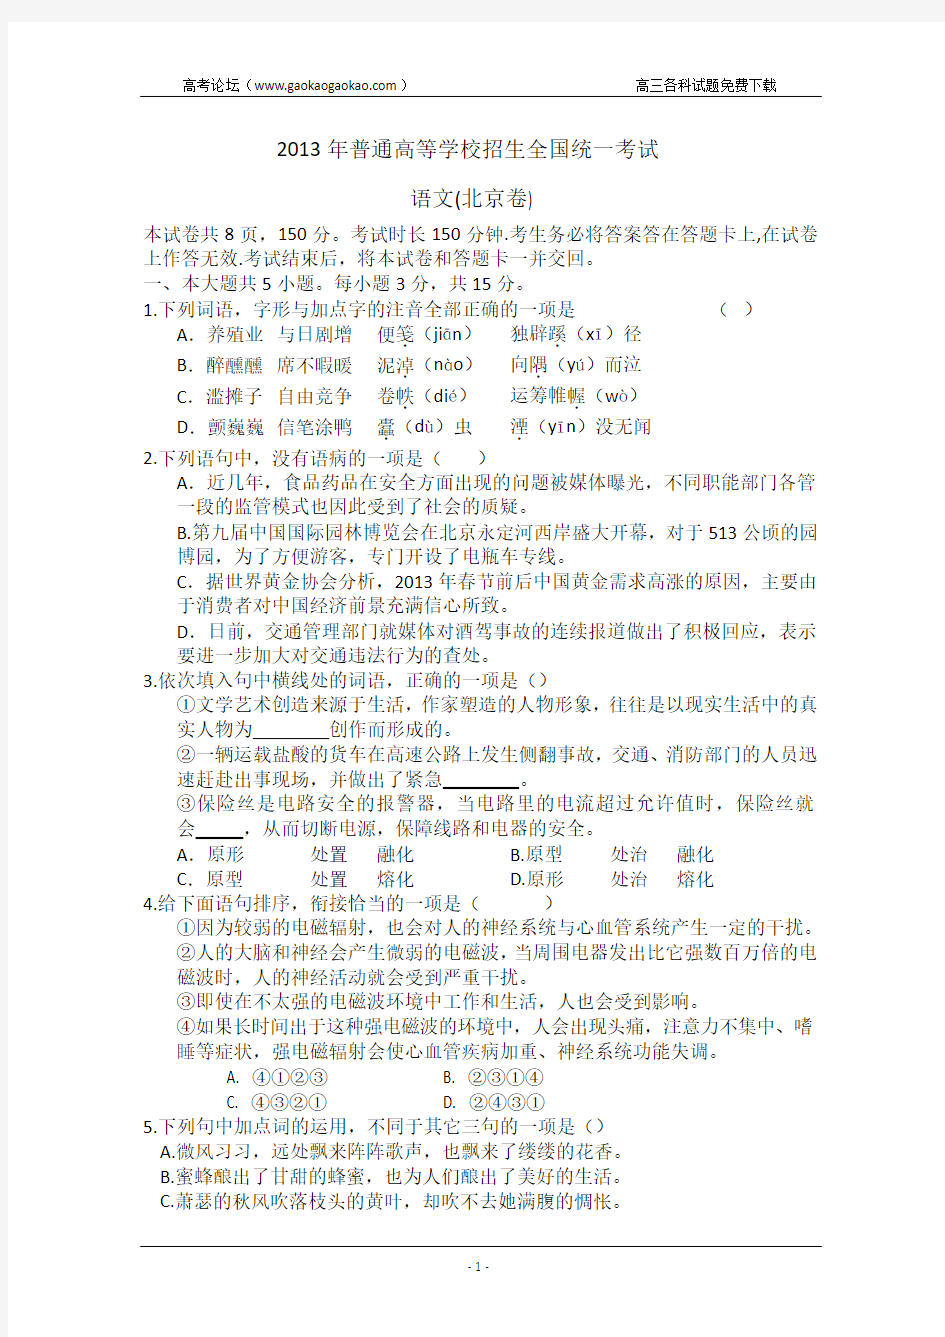 2013年高考真题——语文(北京卷) Word版含答案